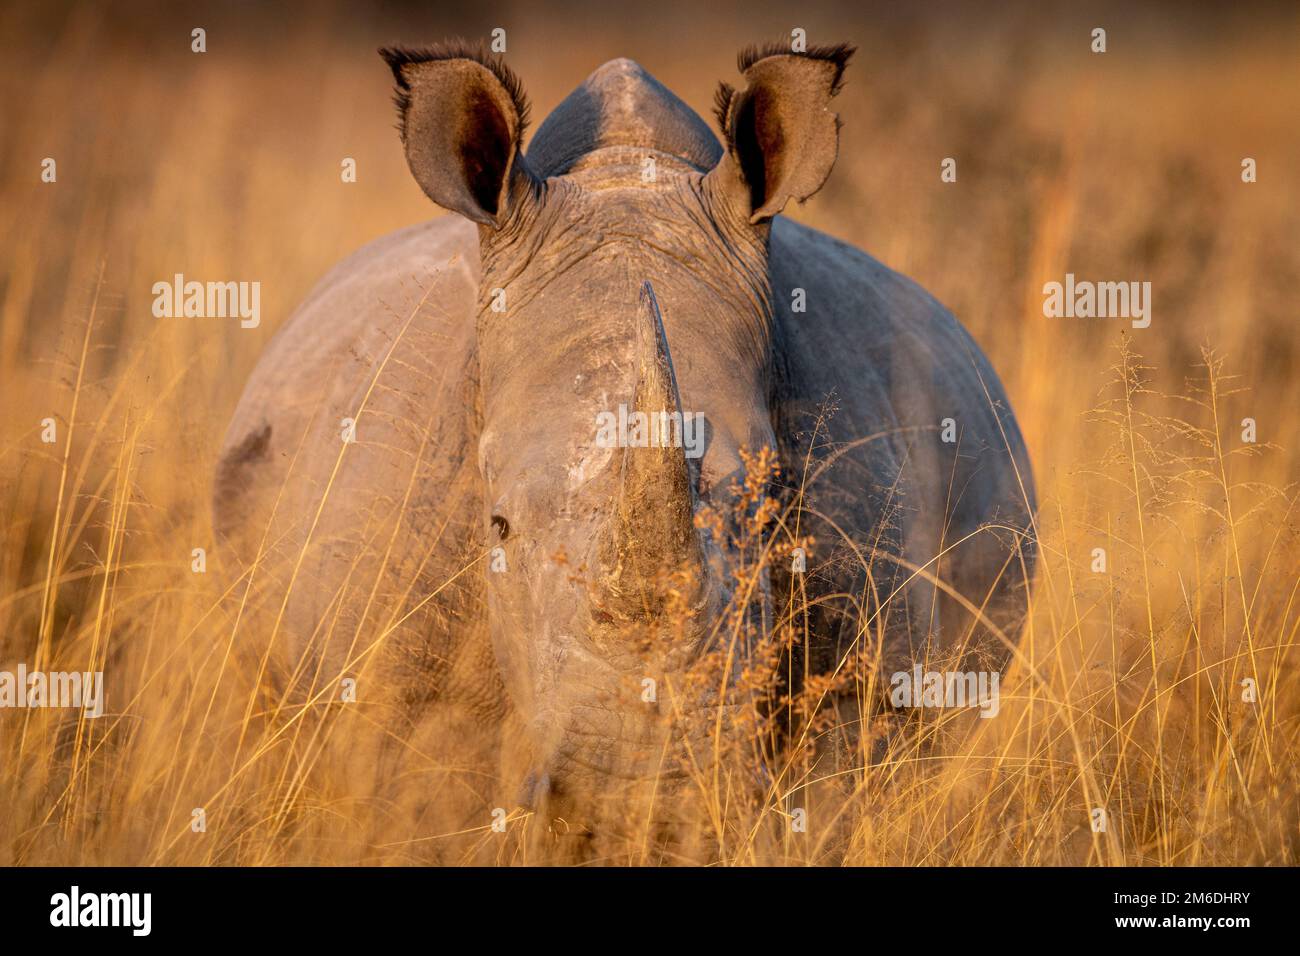 Rinoceronte blanco de pie en la hierba alta. Foto de stock